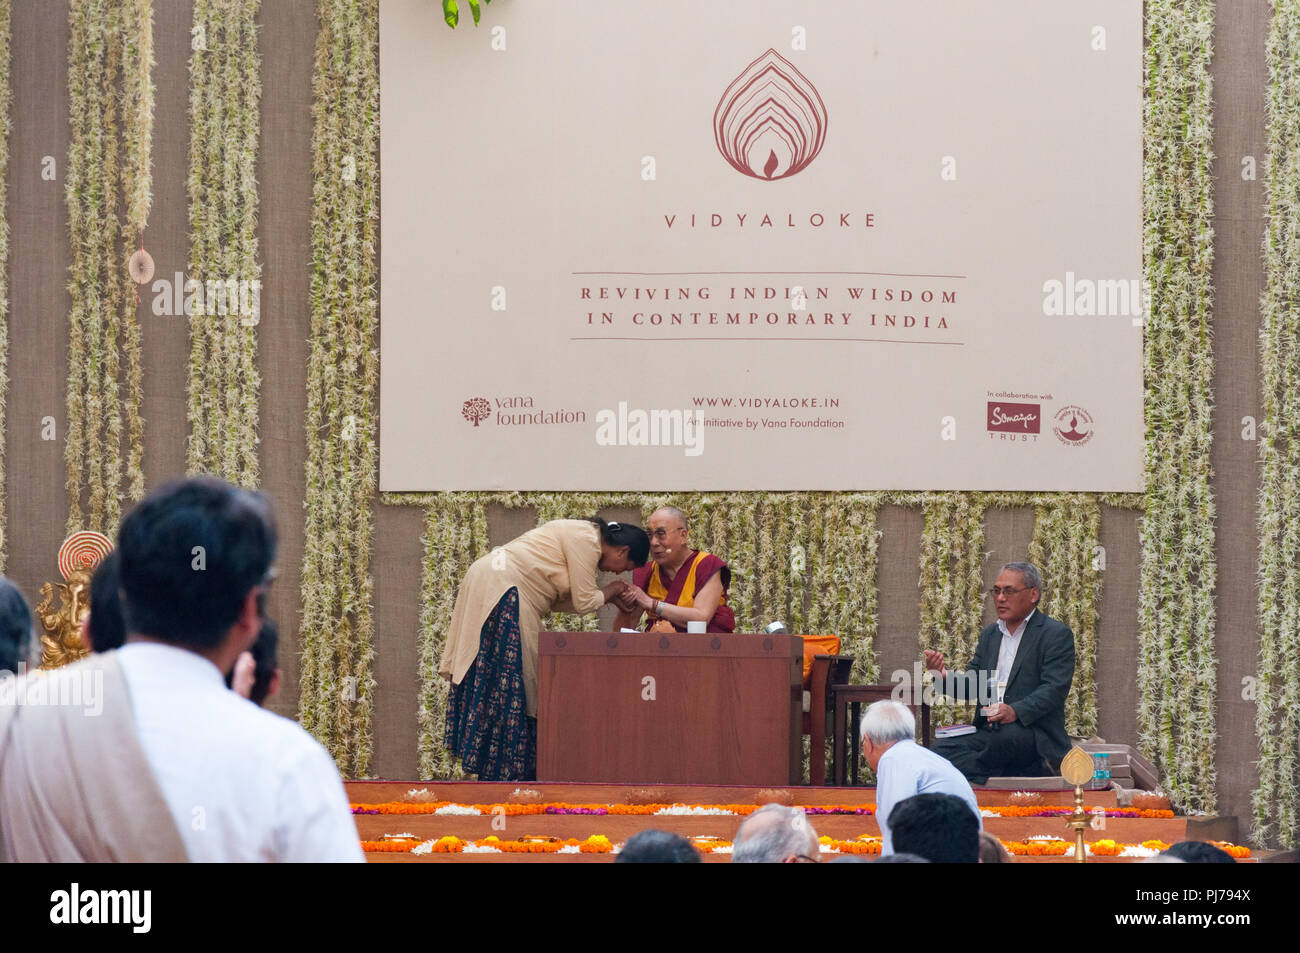 MUMBAI, INDIEN - 10. Dezember 2017: Der 14. Dalai Lama, dem buddhistischen religiösen Leiter, segnet eine Frau auf der Bühne einen Vortrag Veranstaltung. Stockfoto